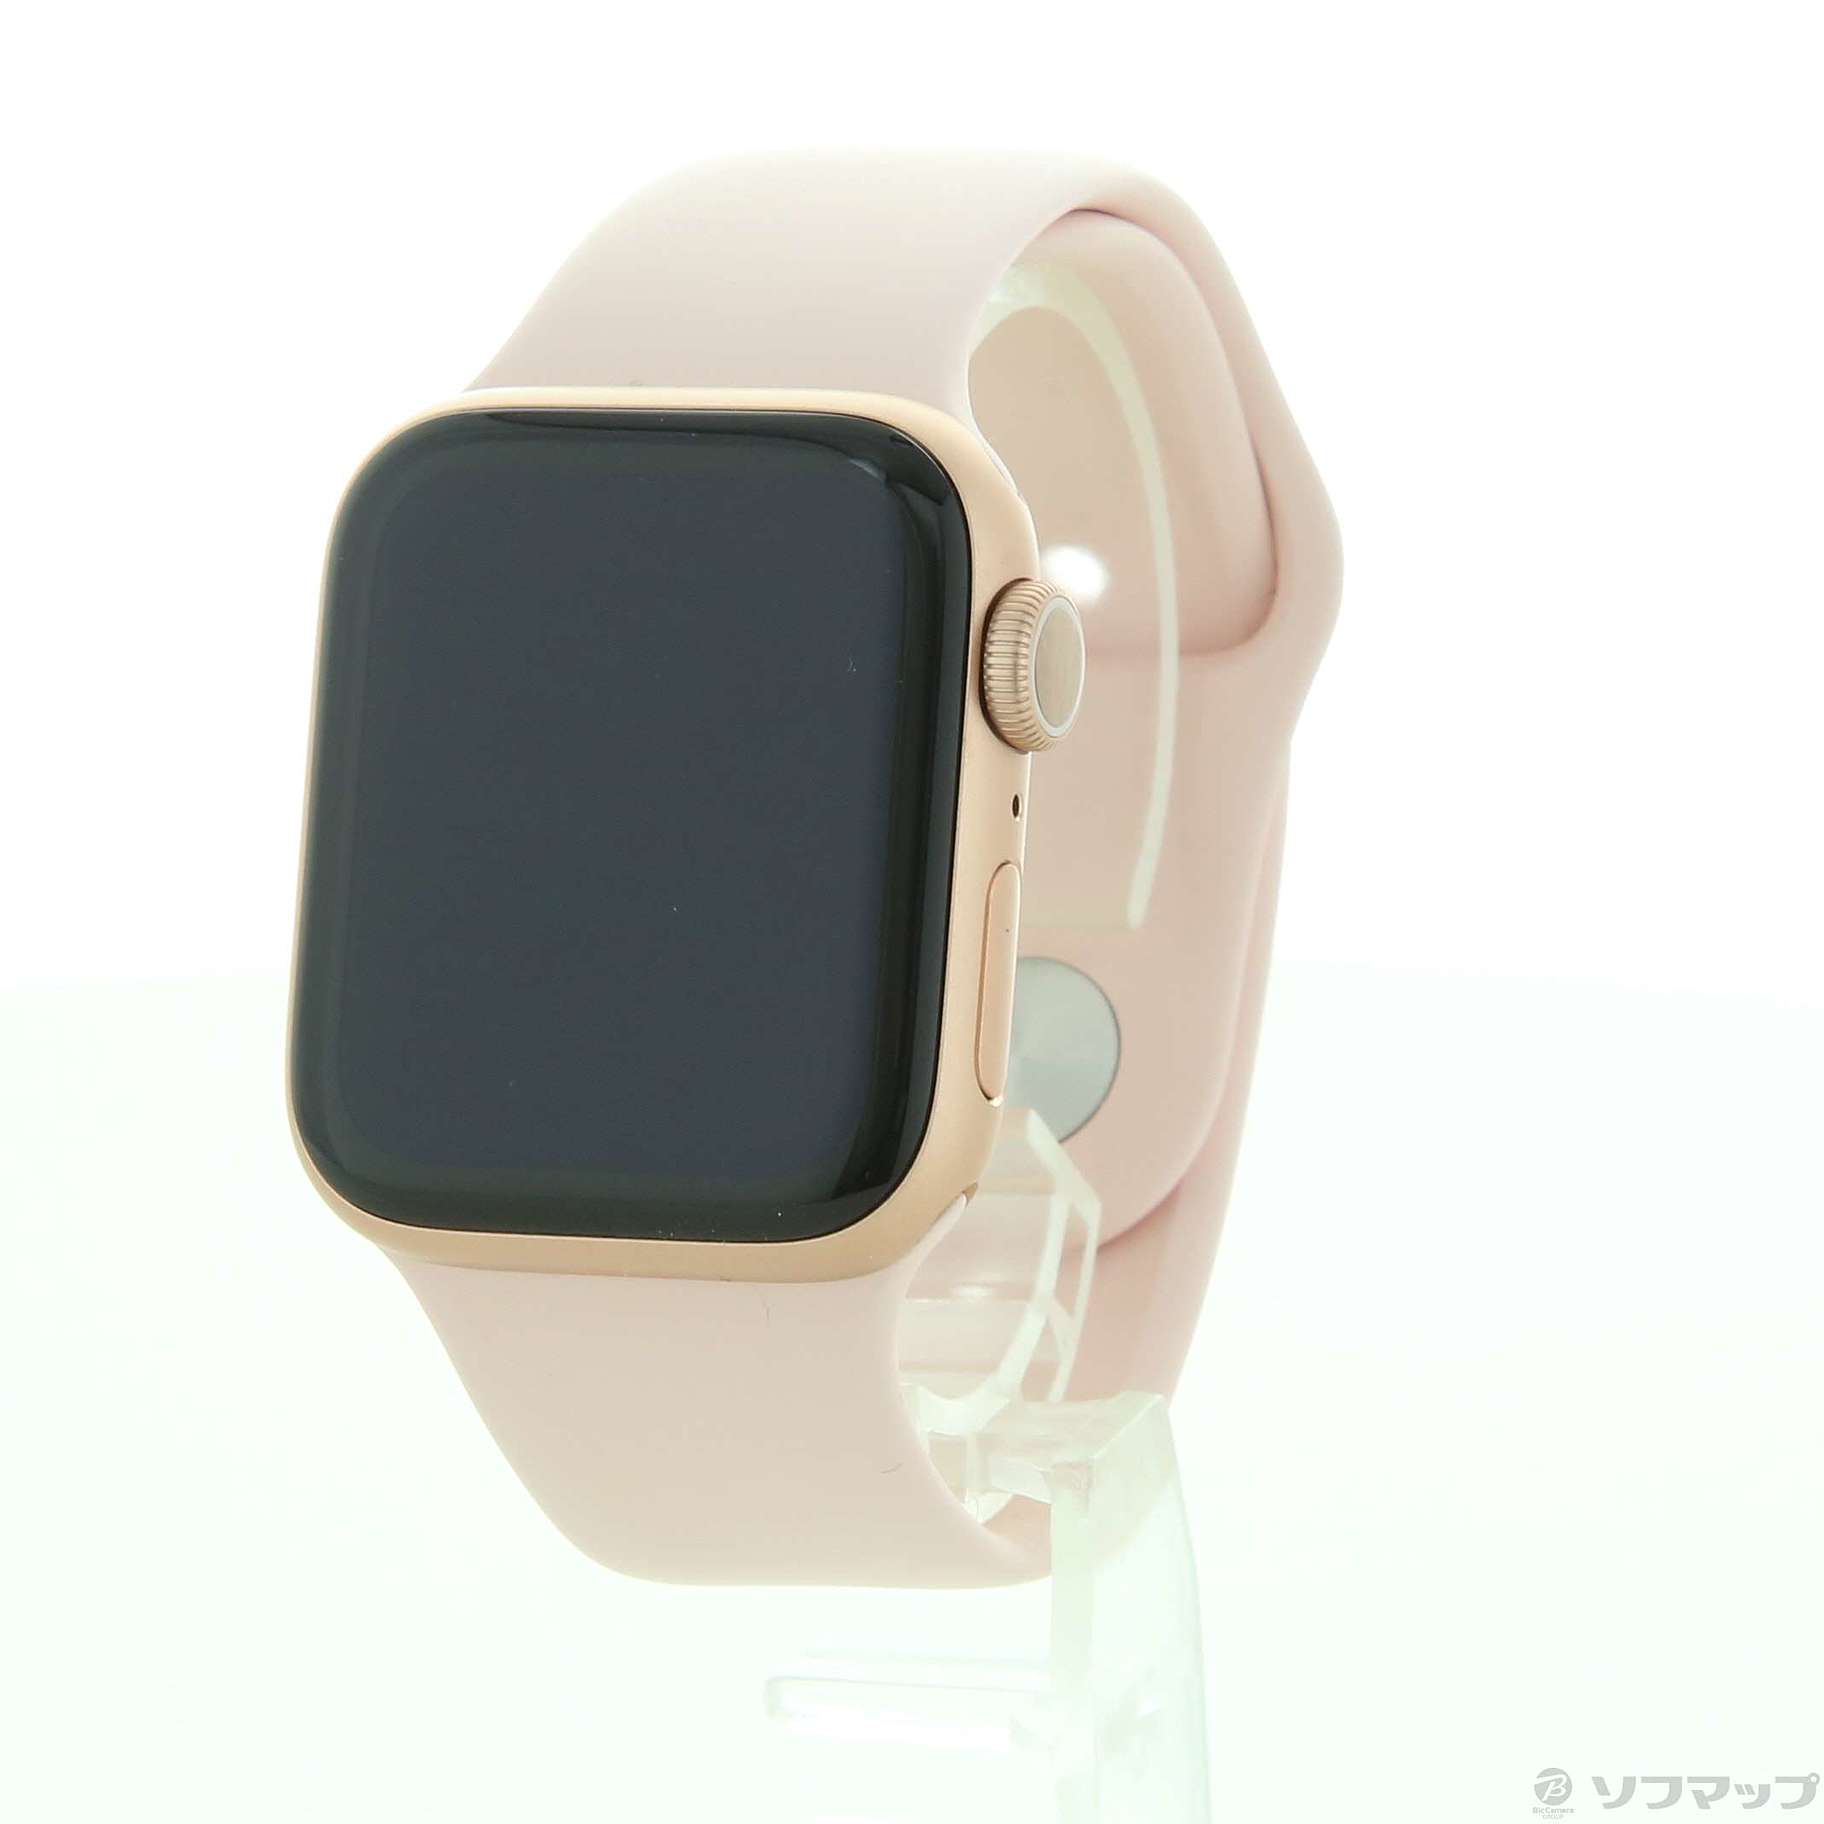 大人気商品 Apple Watch Series 6 アルミニウム 40mm | www.tegdarco.com